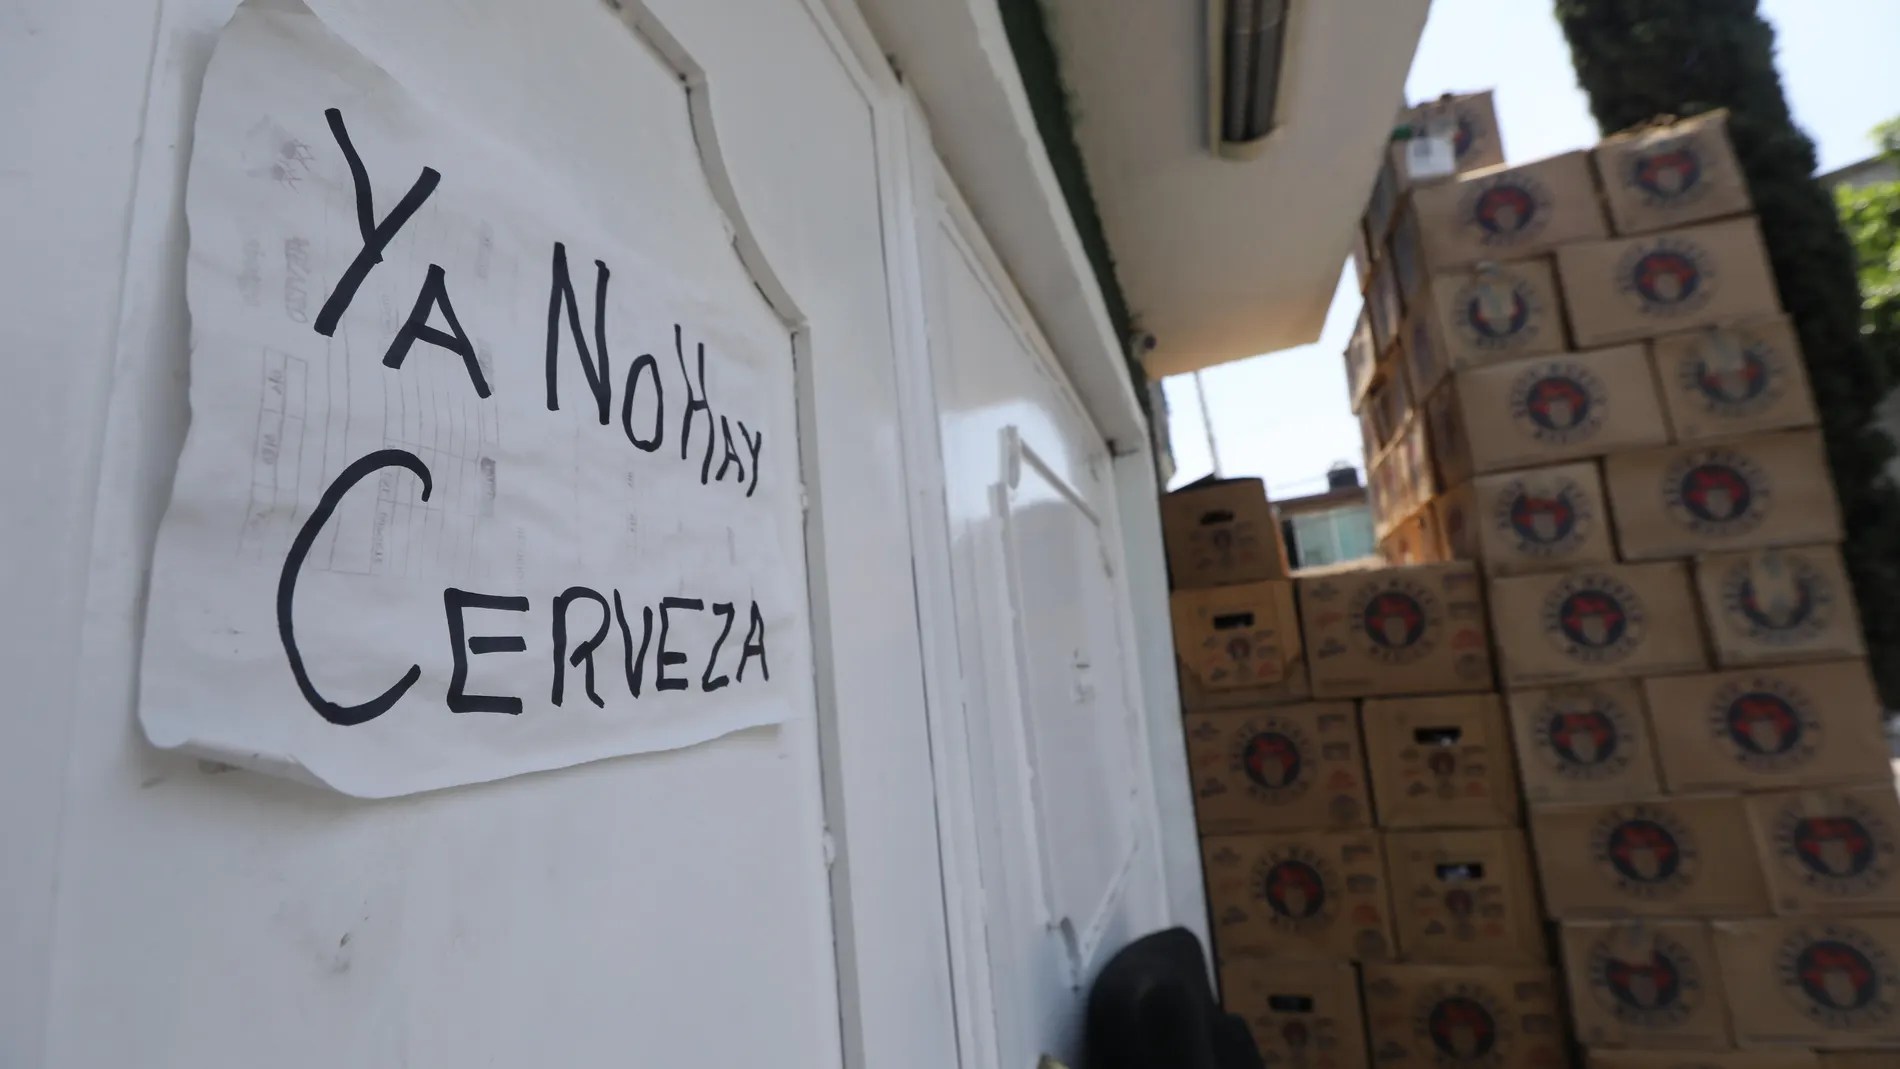 "No hay cerveza": La escasez por la crisis de COVID-19 se evidencia en México